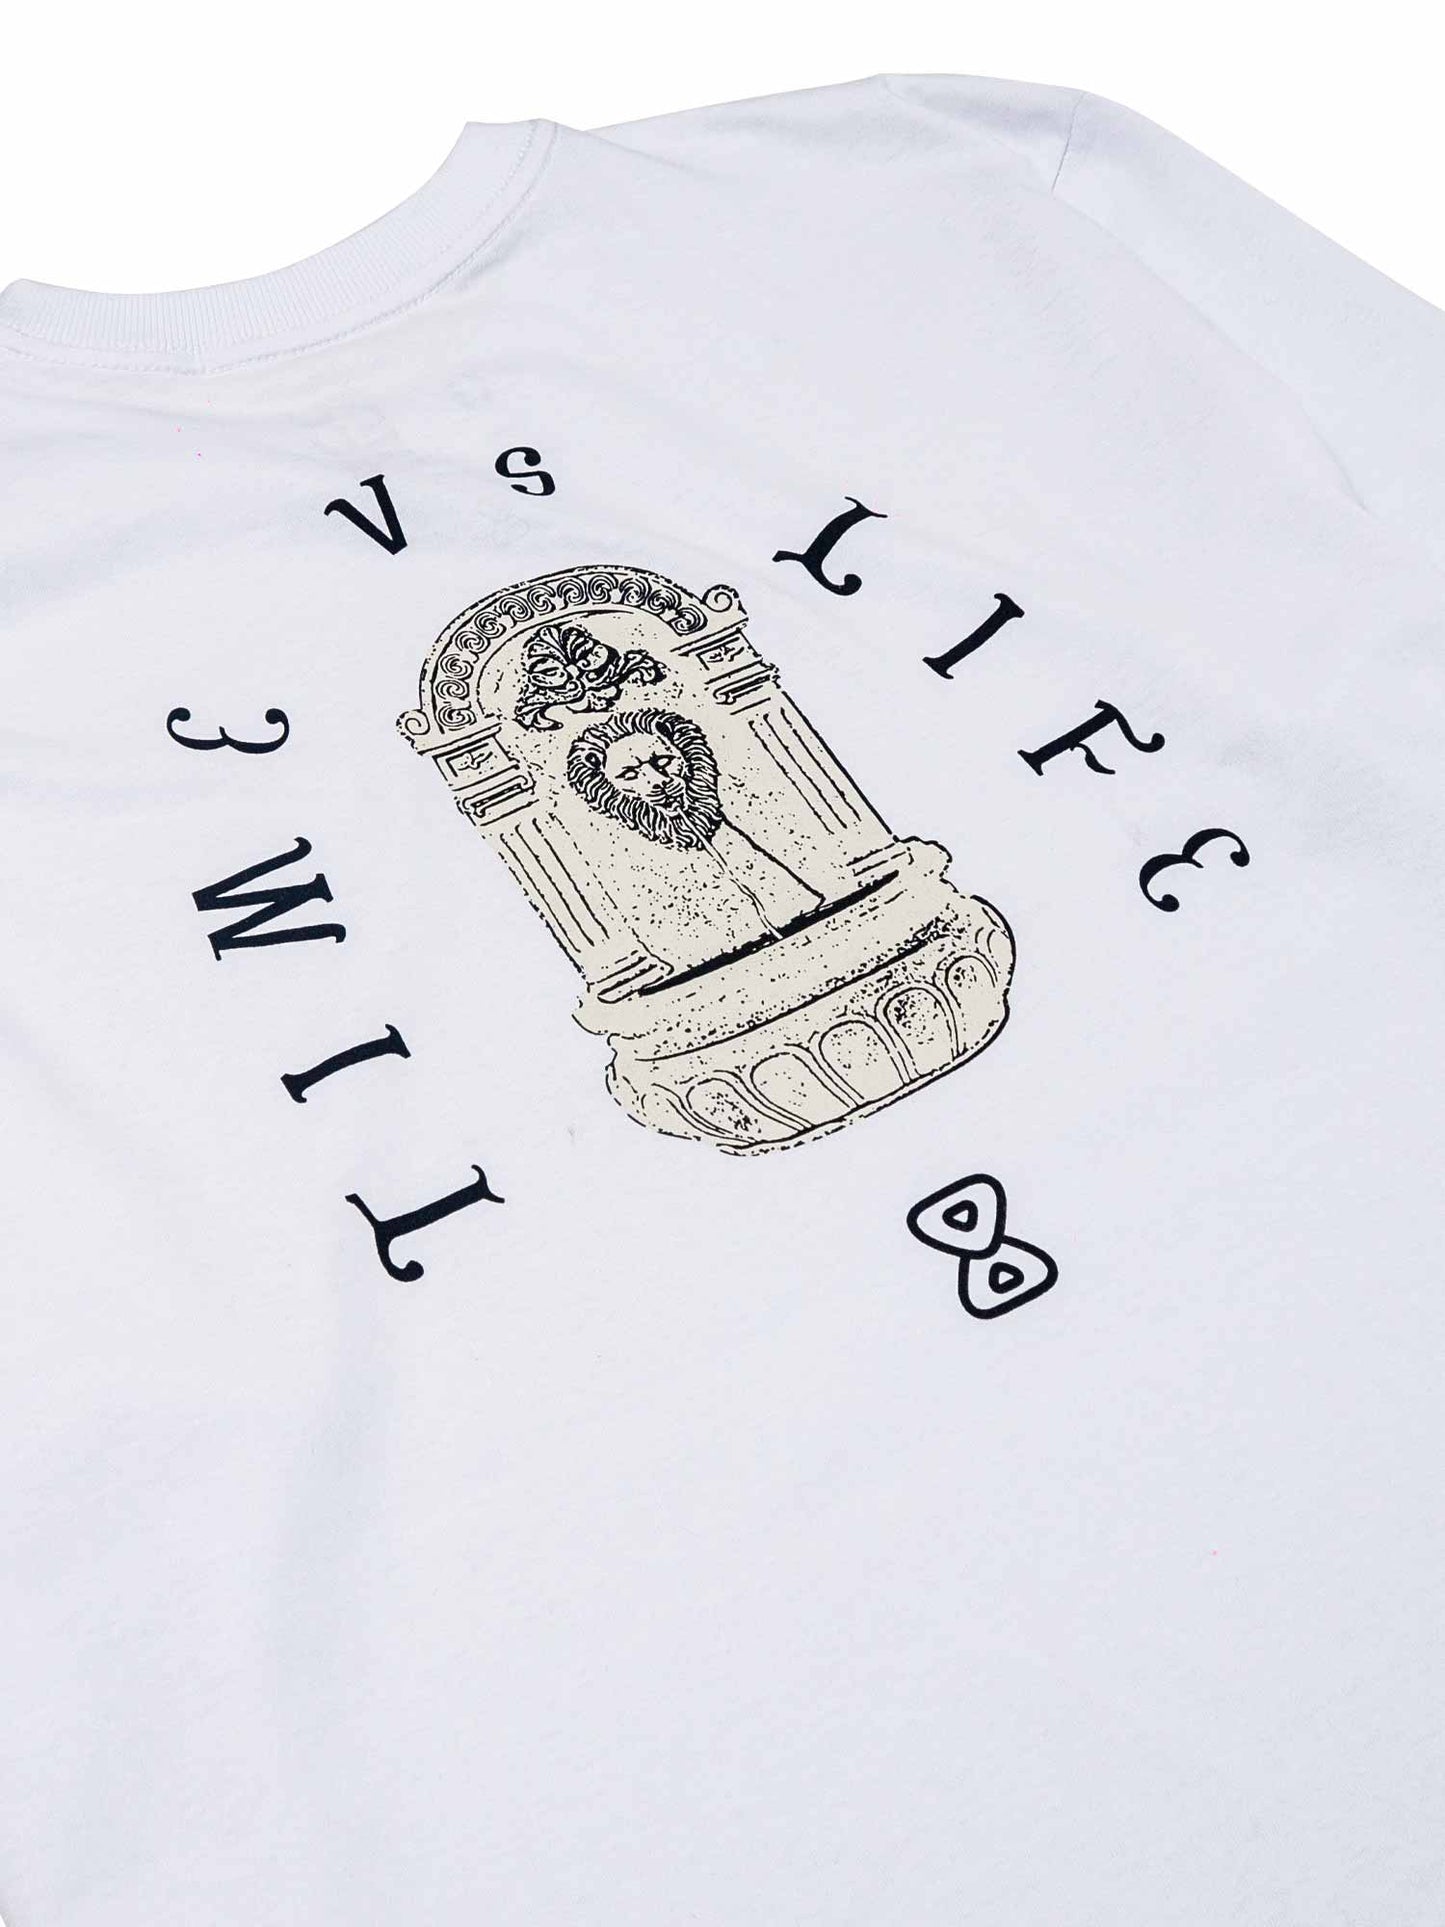    Camiseta-Future-Time-Vs-Life-Branca-Costas-Close